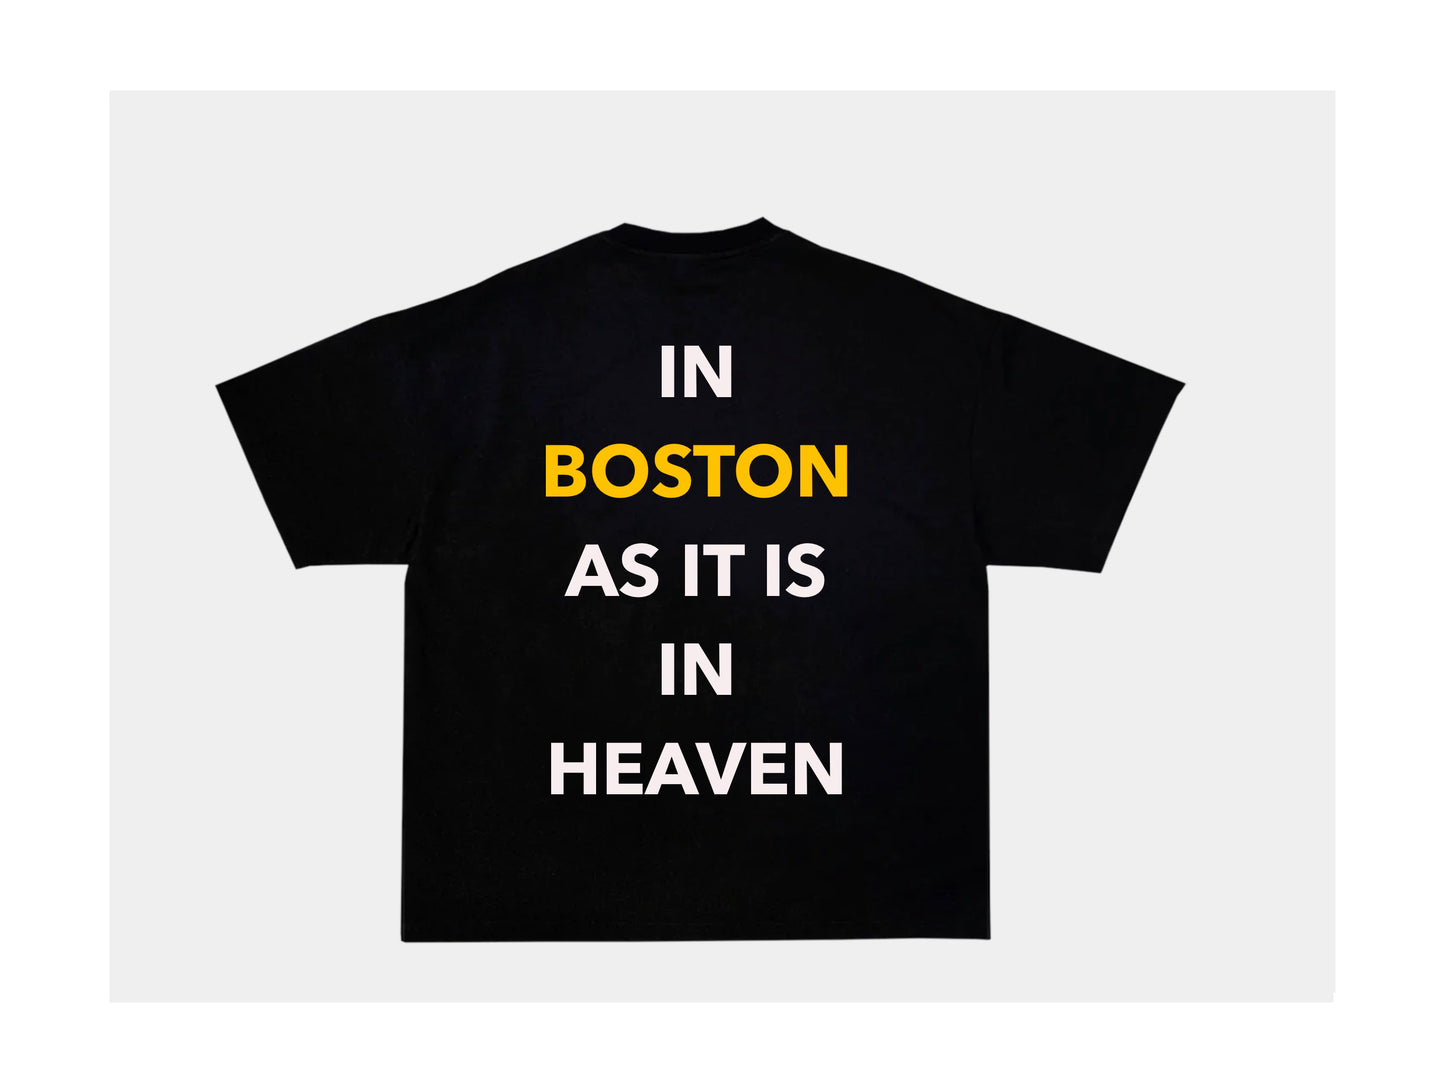 IN BOSTON AS IT IS IN HEAVEN